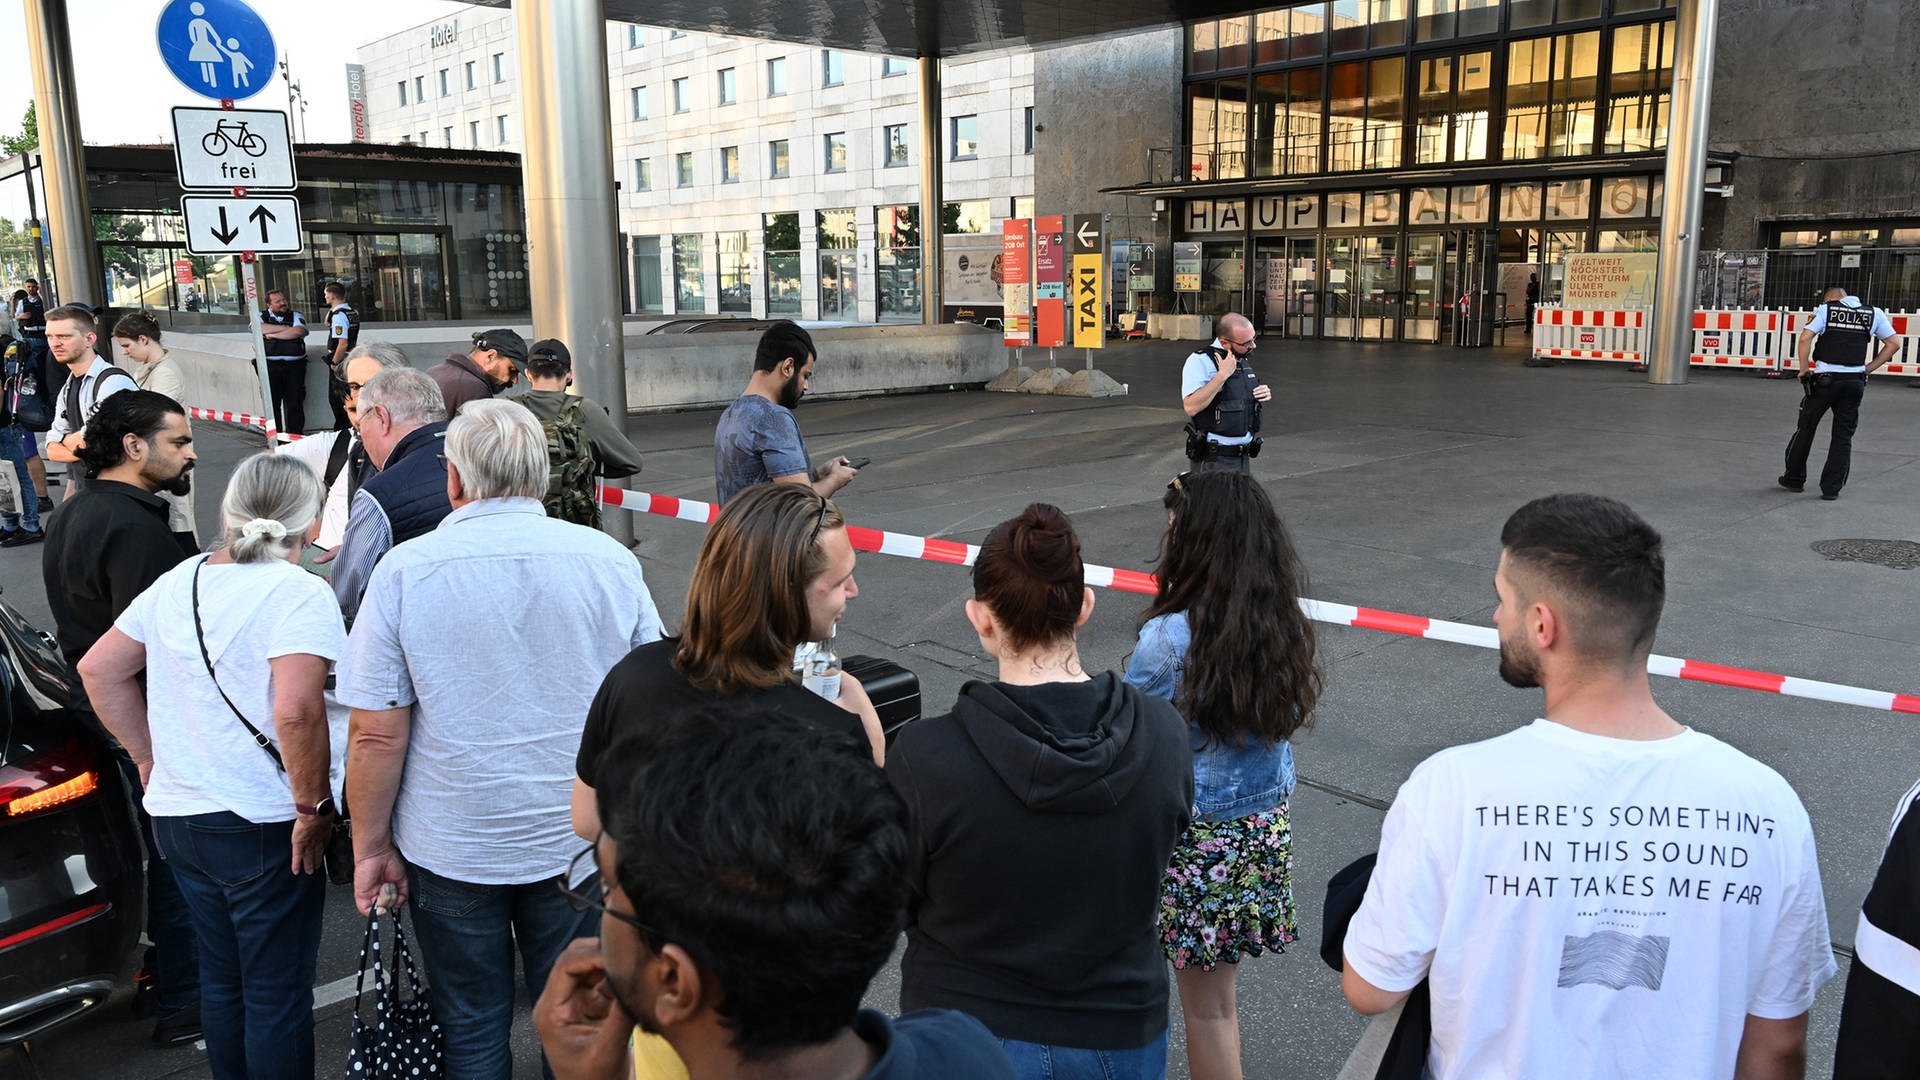 Wegen schriftlicher Drohung: Ulmer Hauptbahnhof von Polizei gesperrt